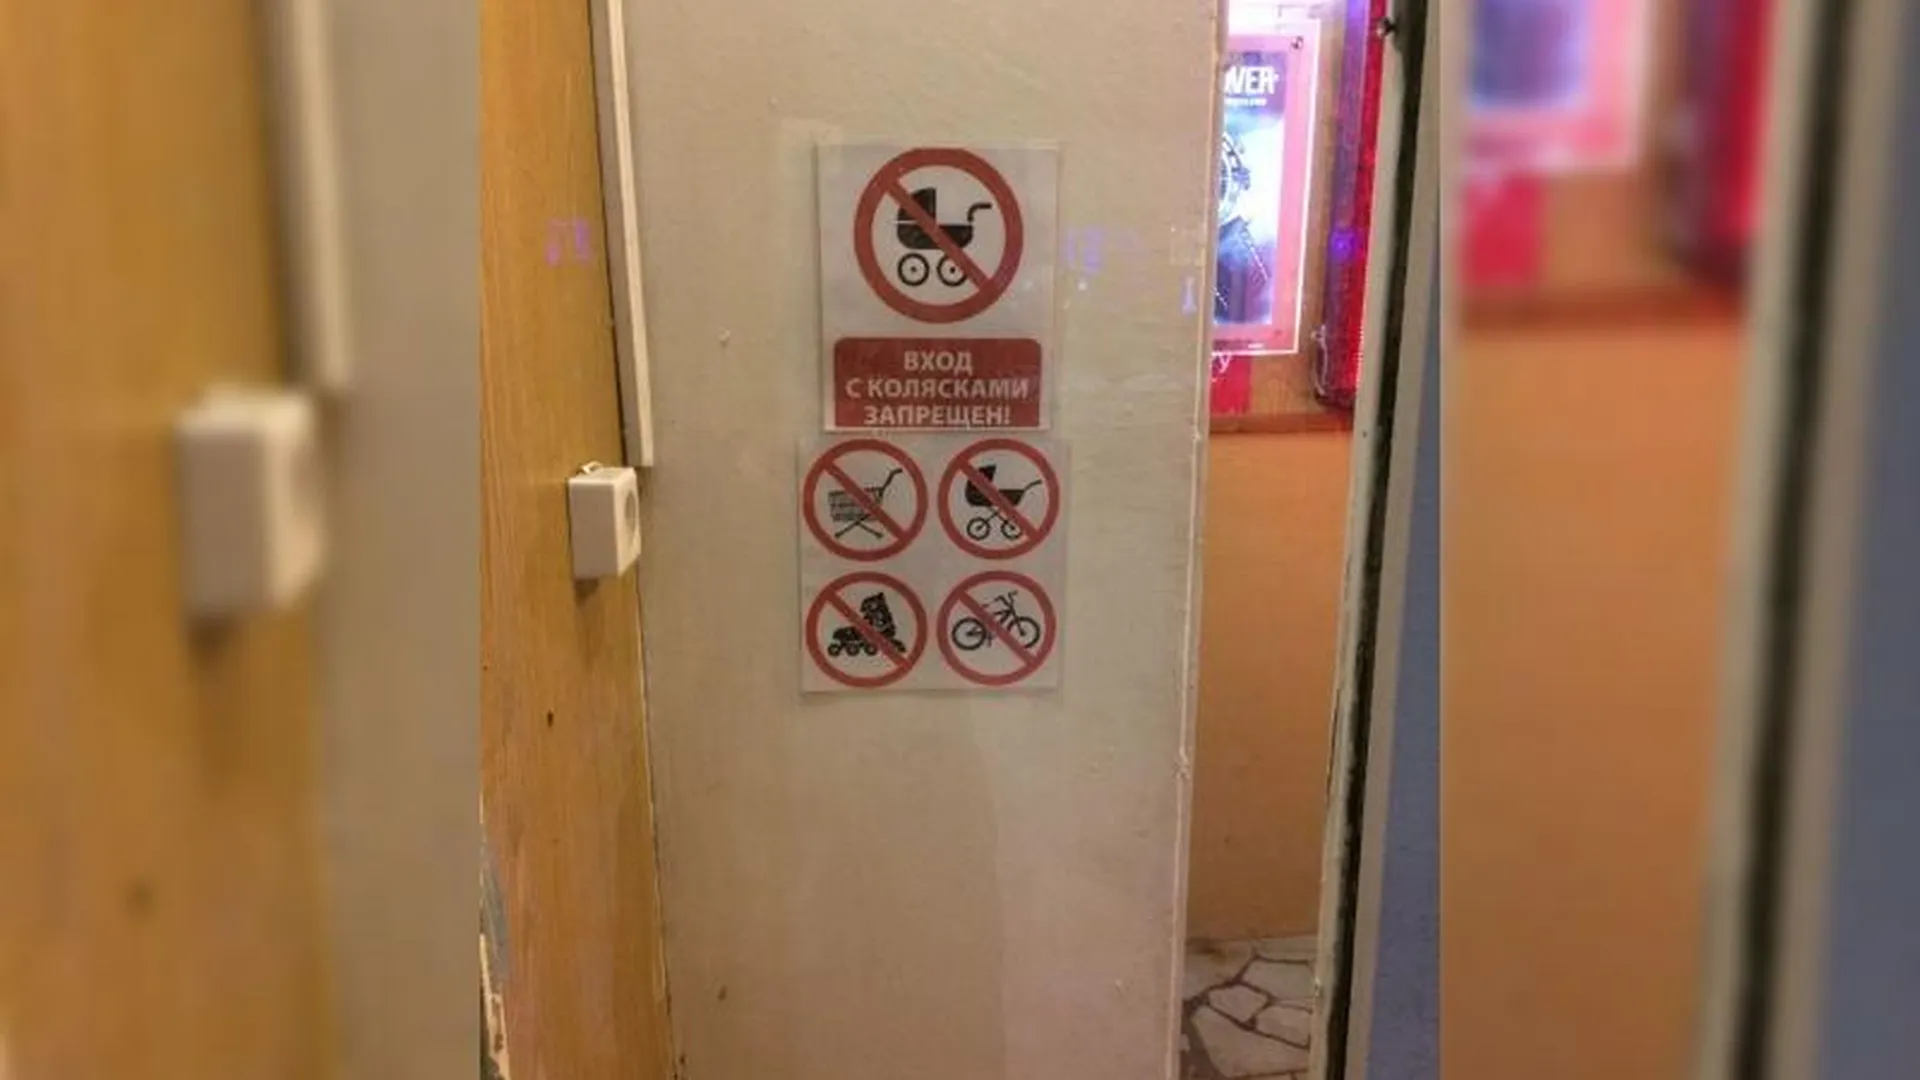 Мамам с колясками запрещают заходить в магазин в Химках